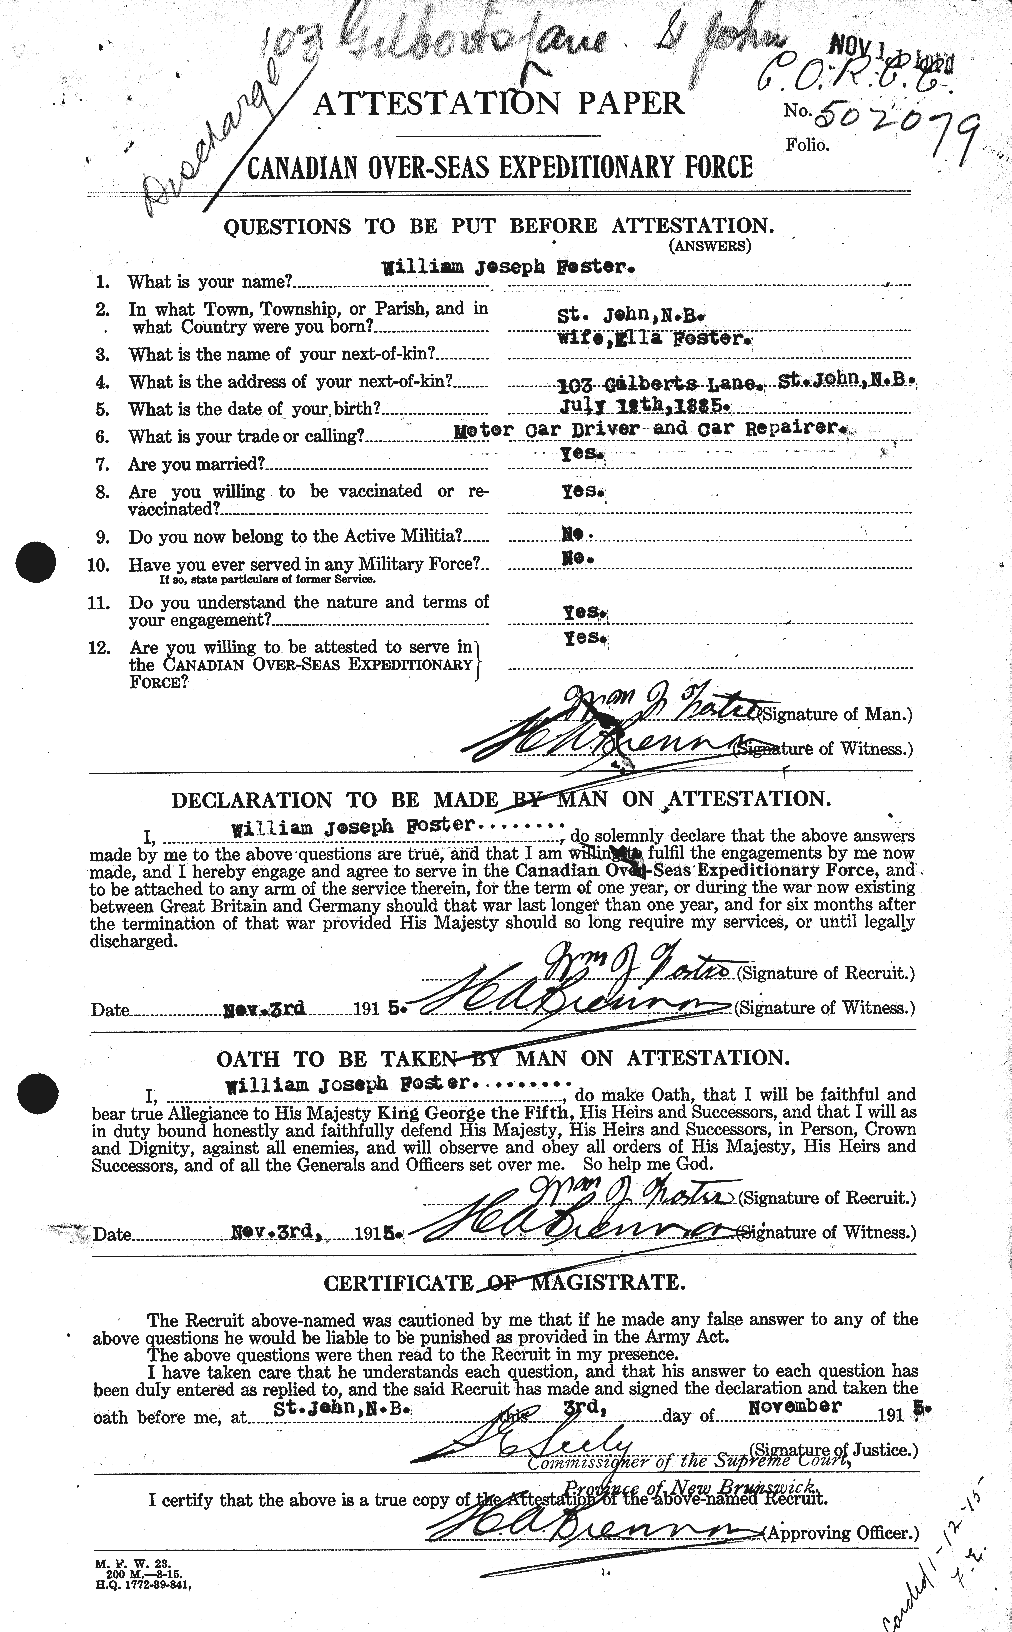 Dossiers du Personnel de la Première Guerre mondiale - CEC 328765a